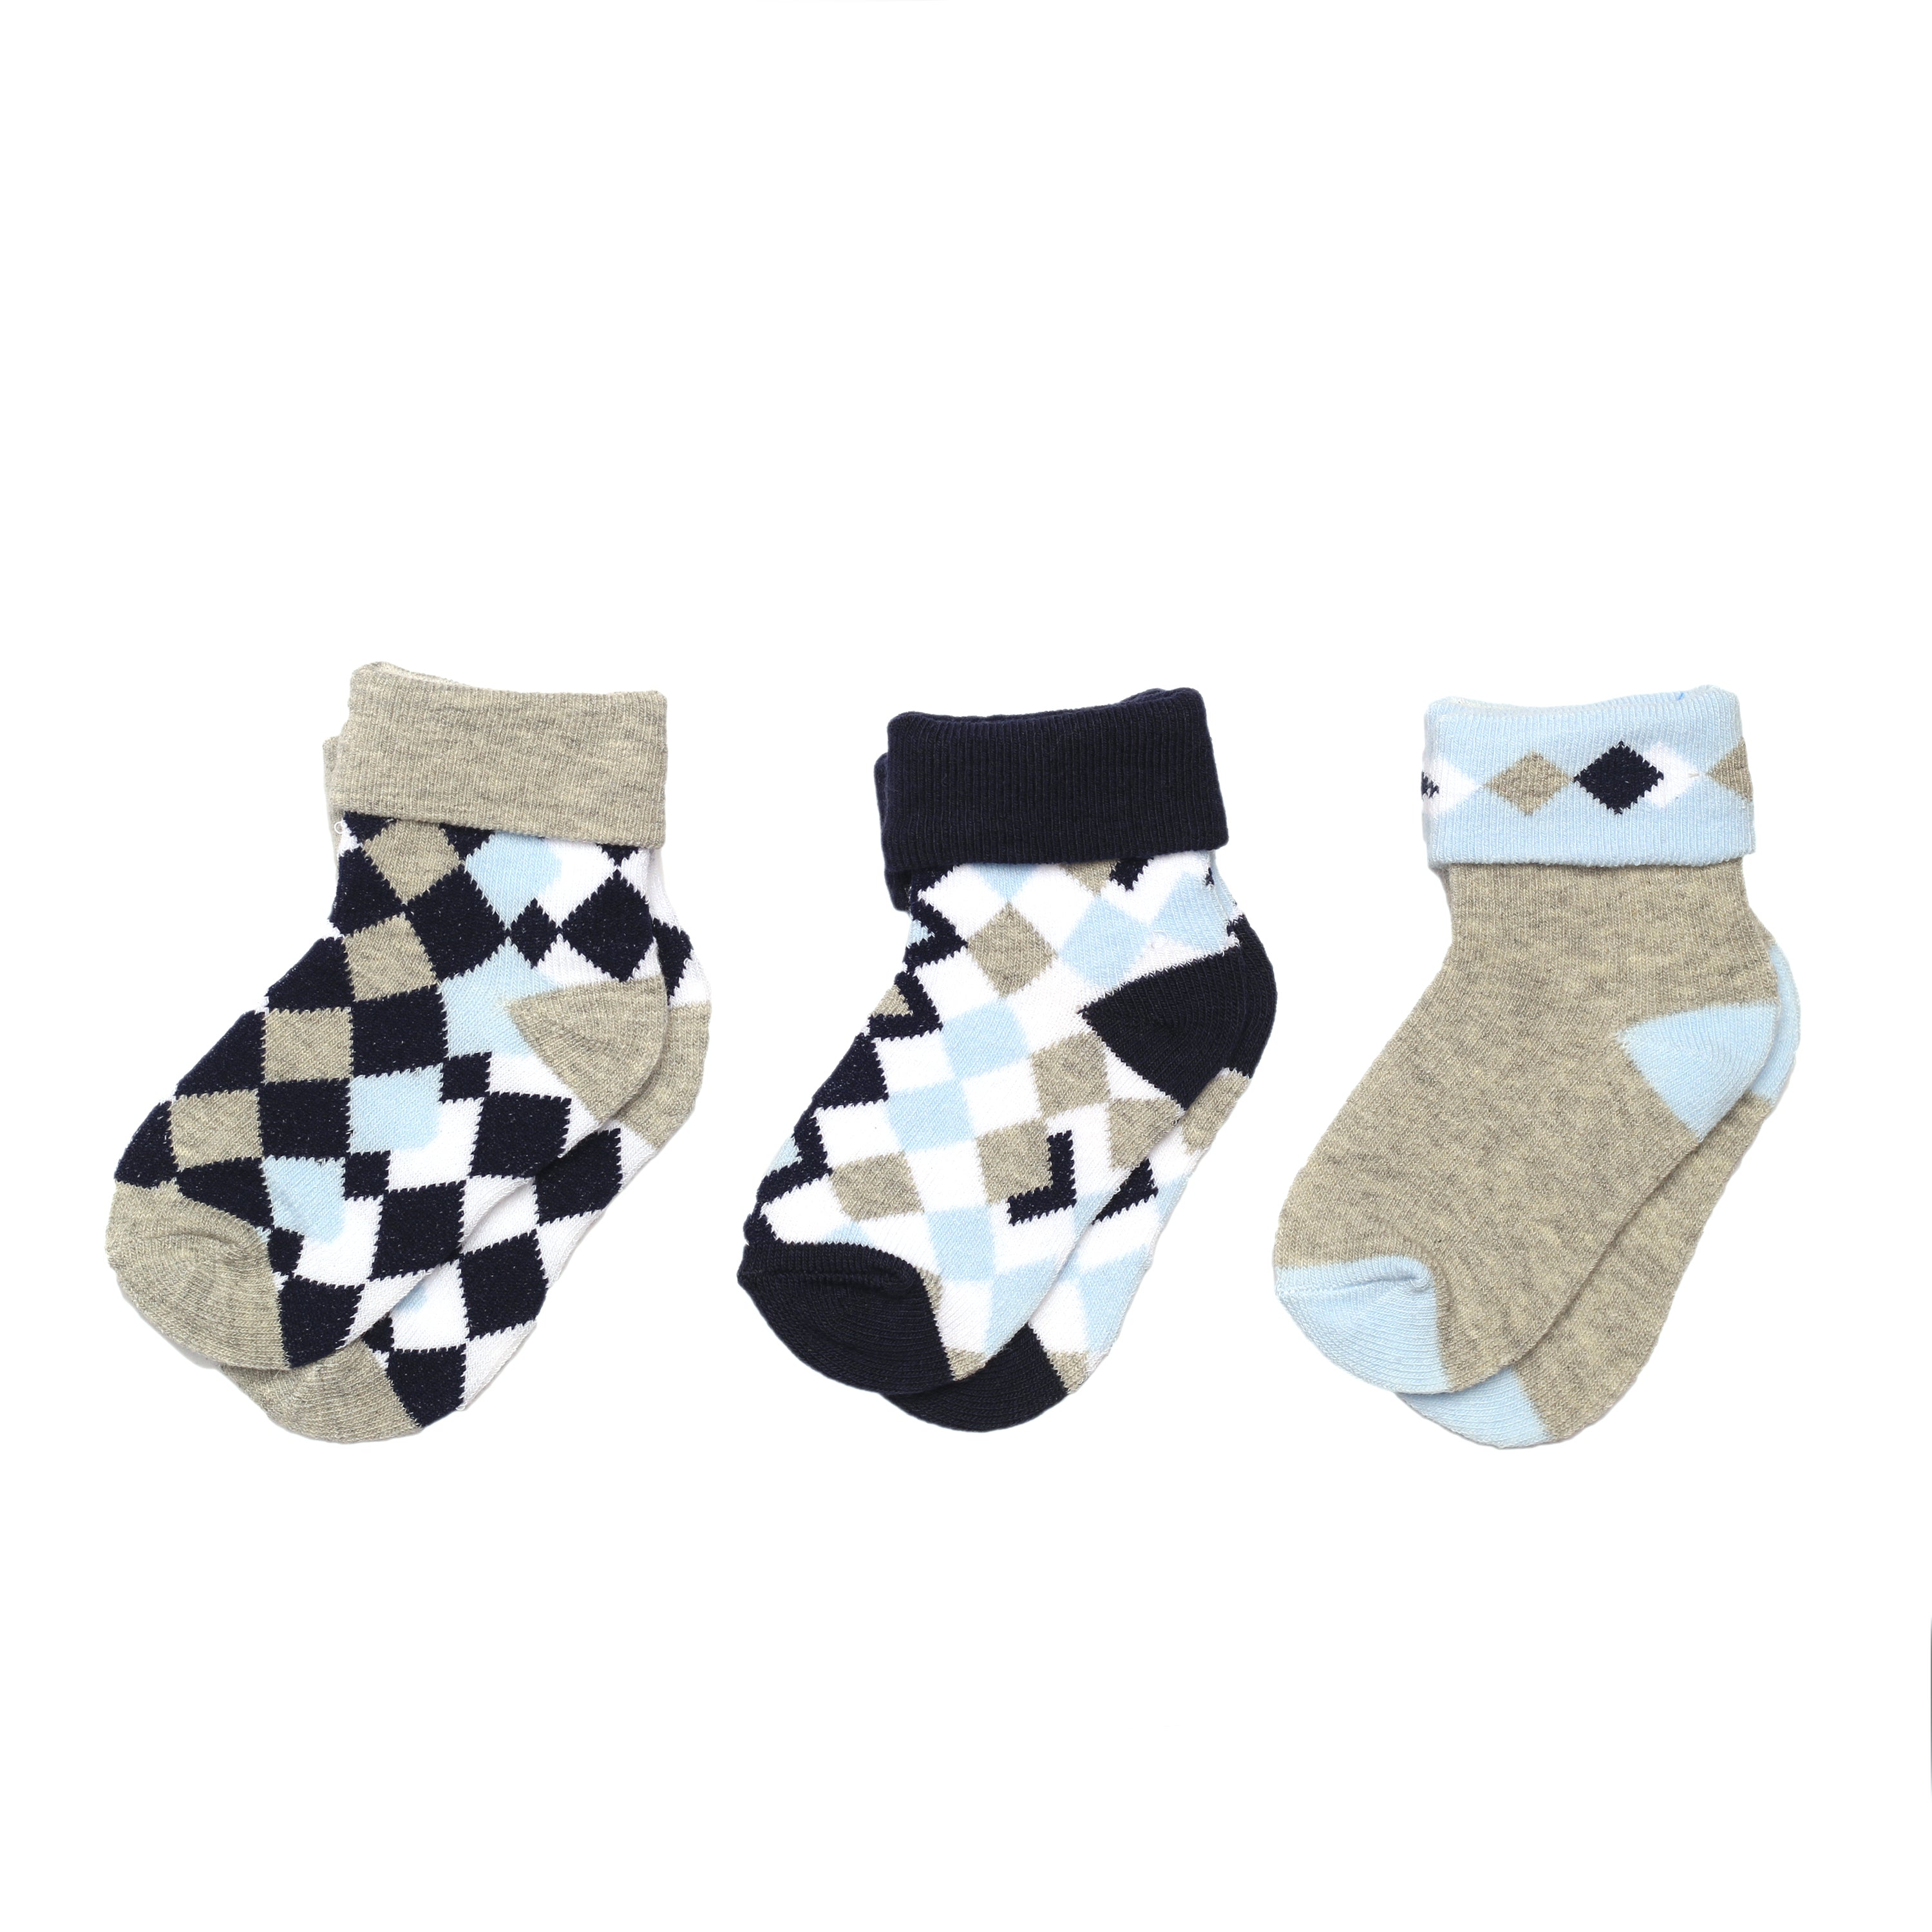 Baby Me Boys 3 in 1 Infant Cuff Socks (B19451)